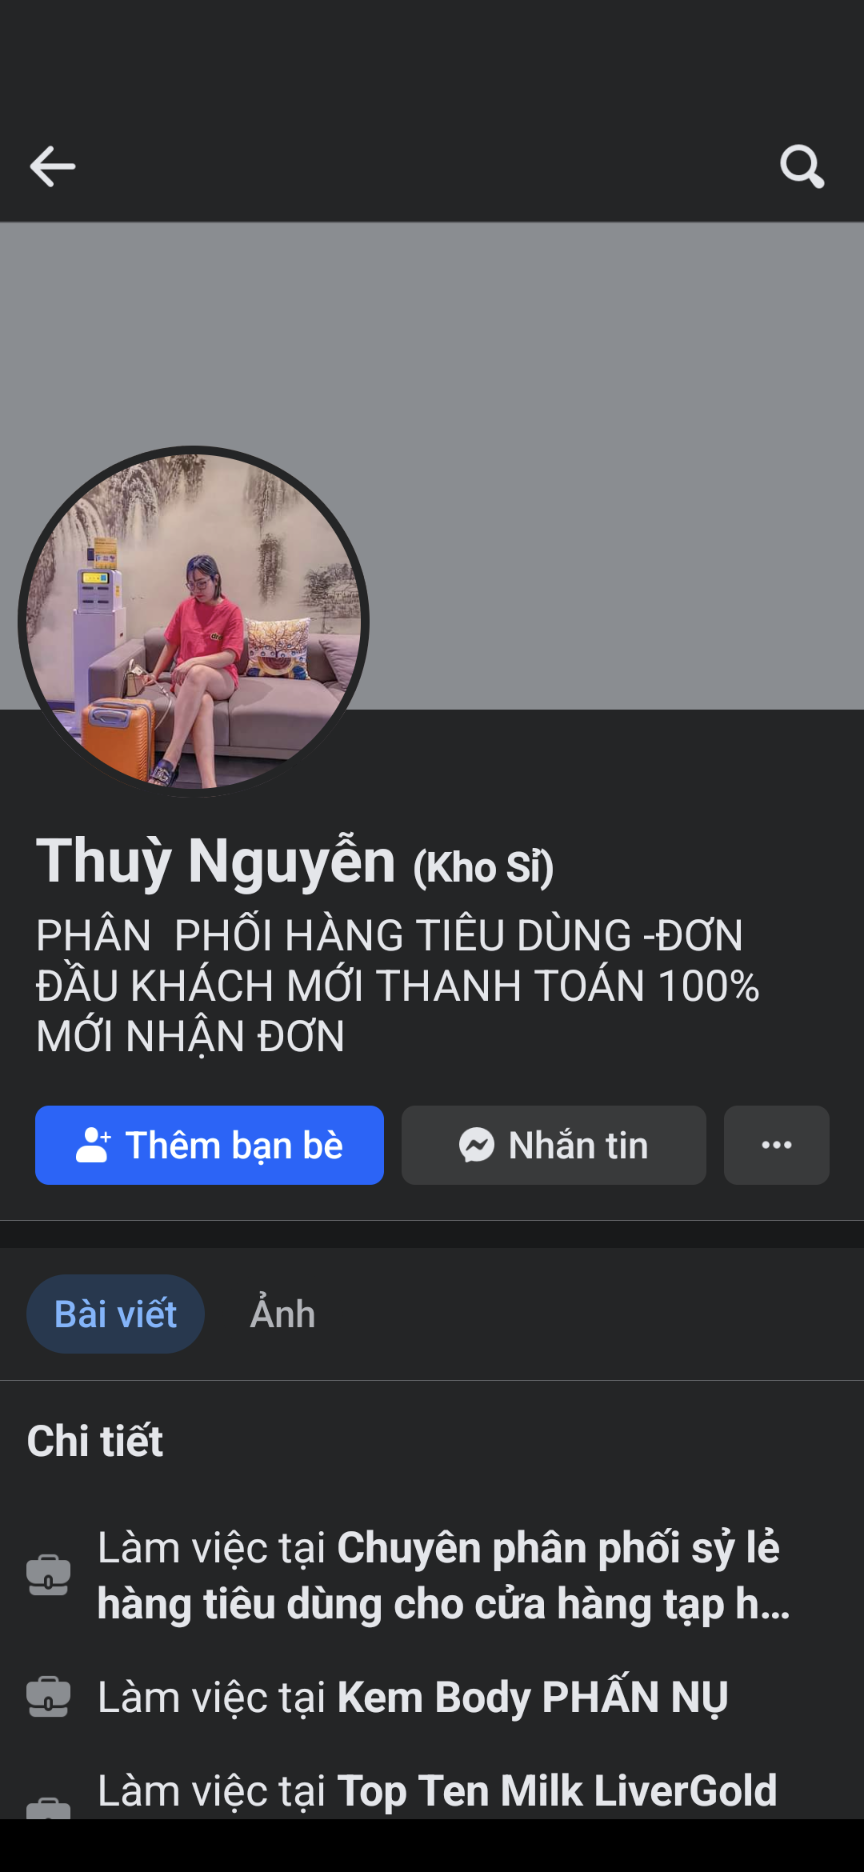 Facebook "Thuỳ Nguyễn" đối tượng sử dụng để lừa đảo